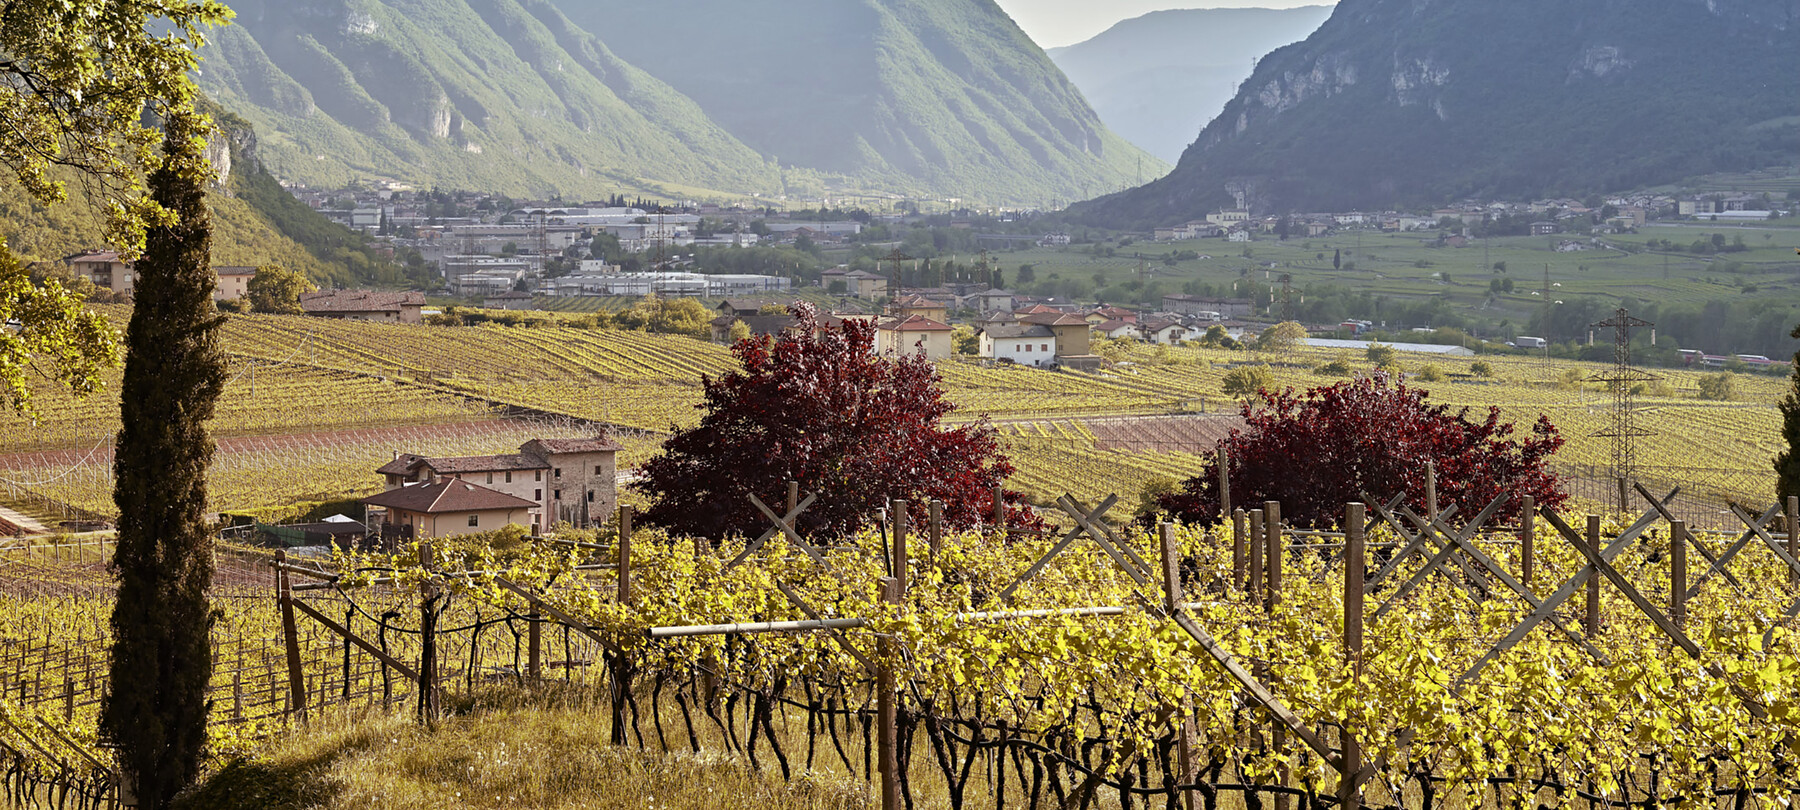 La coltivazione dei vigneti resistenti in Trentino